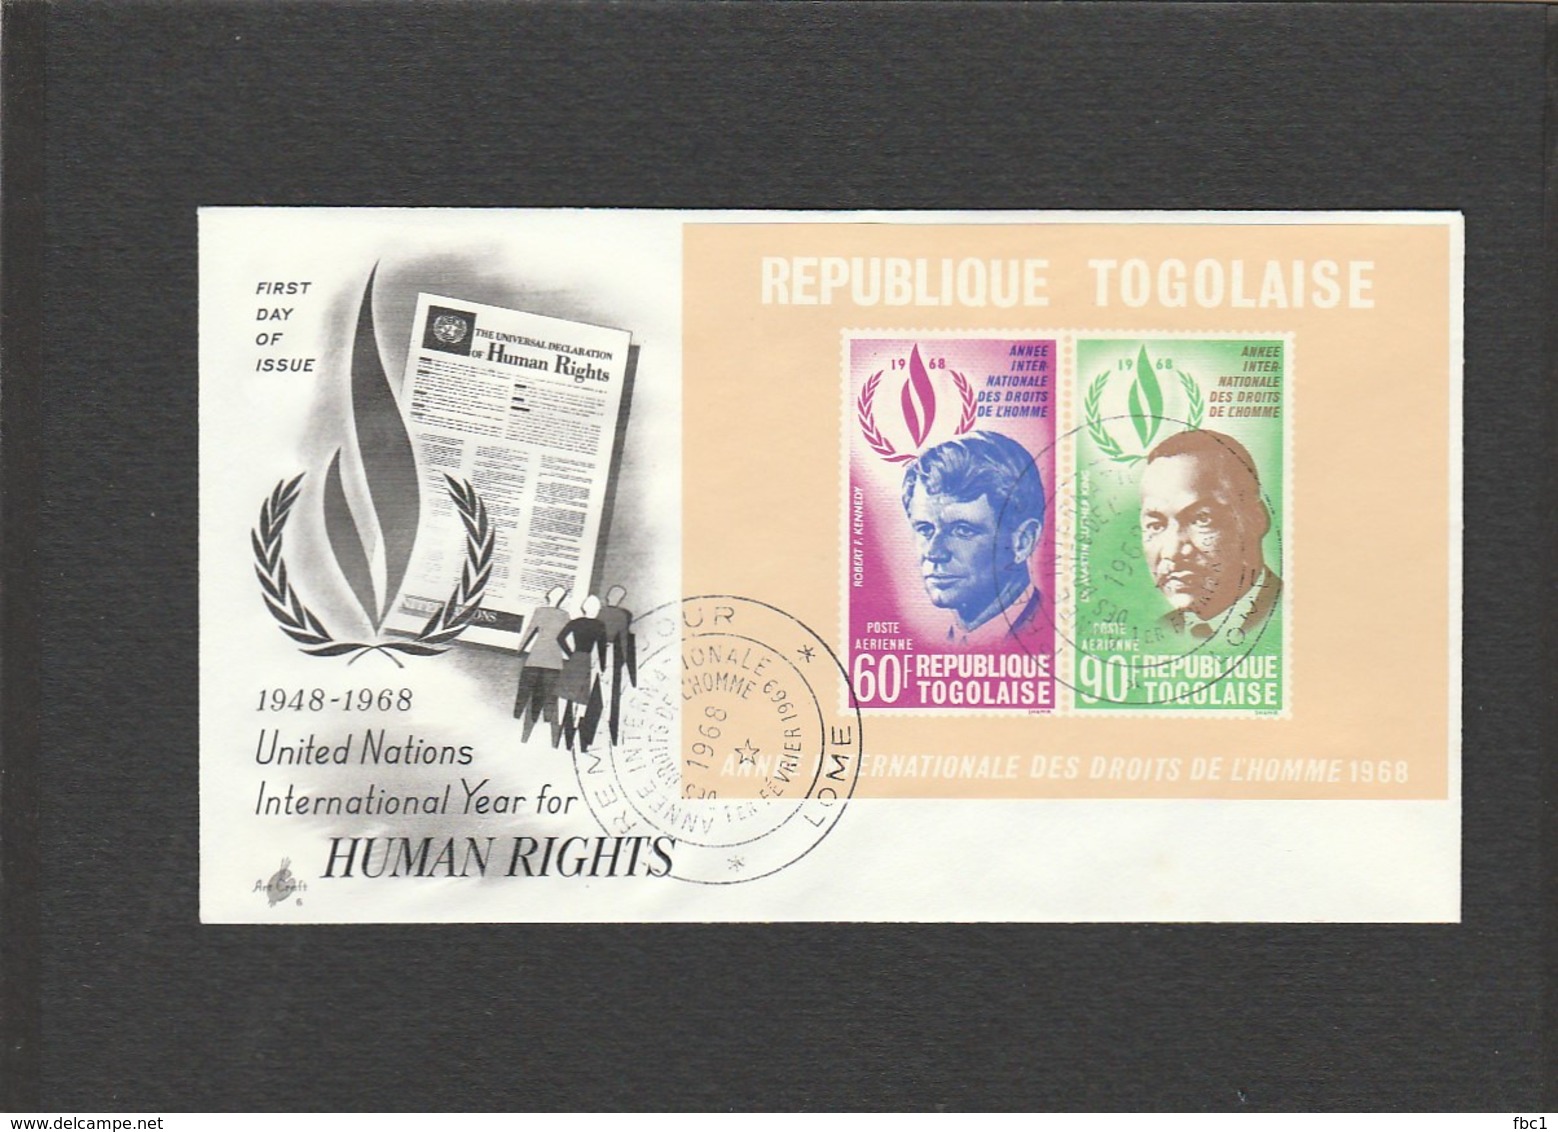 Martin Luther King - FDC République Togolaise - 1968 - Lomé - Togo - Robert F. Kennedy - Martin Luther King